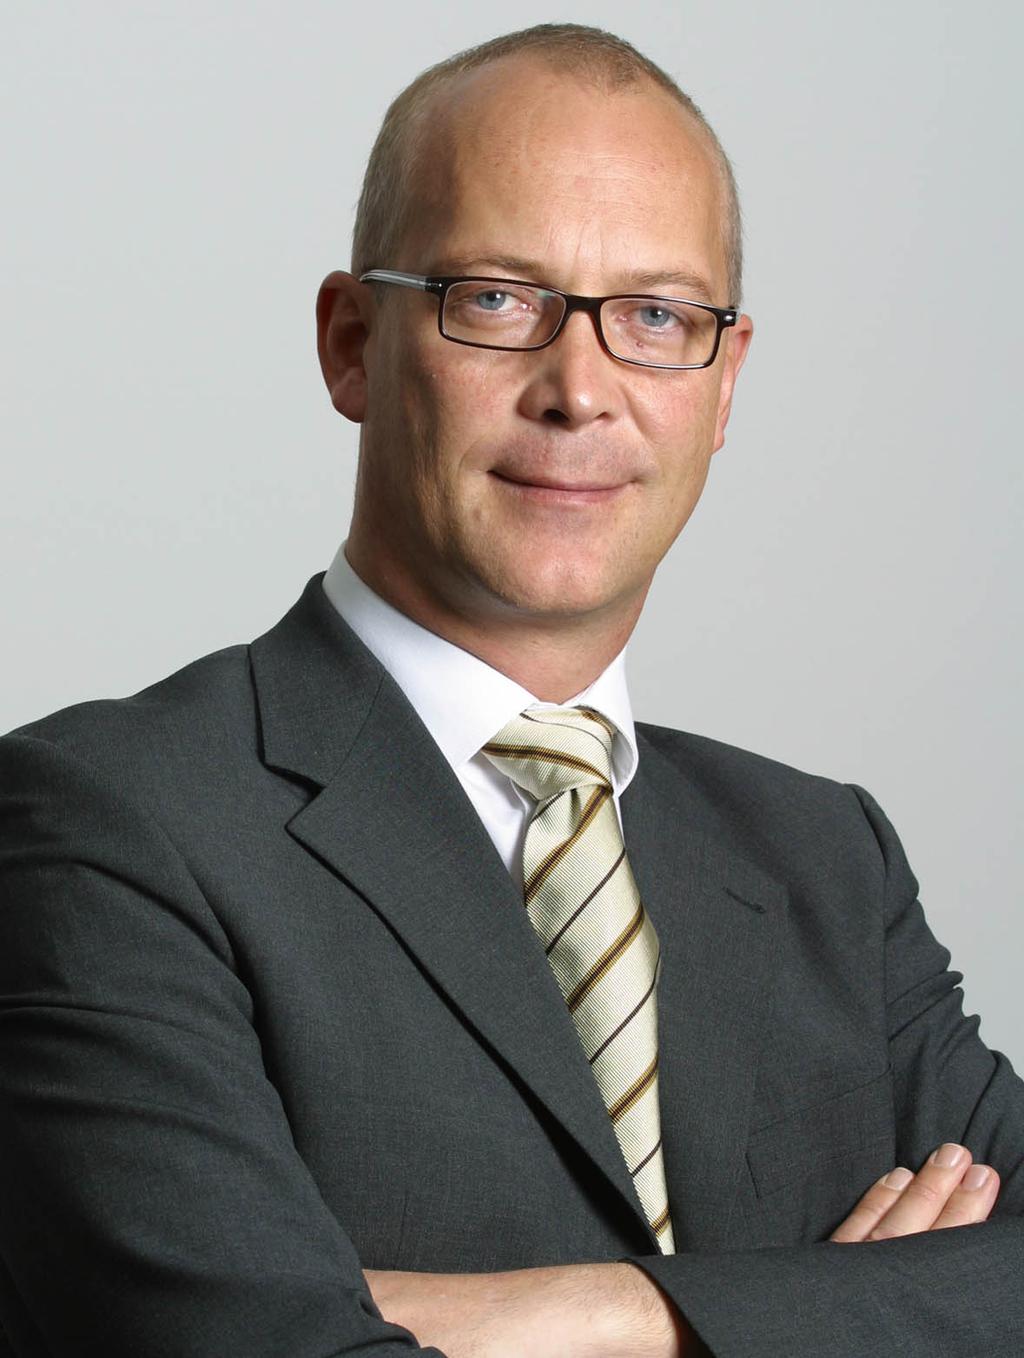 ) Bernd Geske Christian Kullmann Friedrich Merz Peer Steinbrück